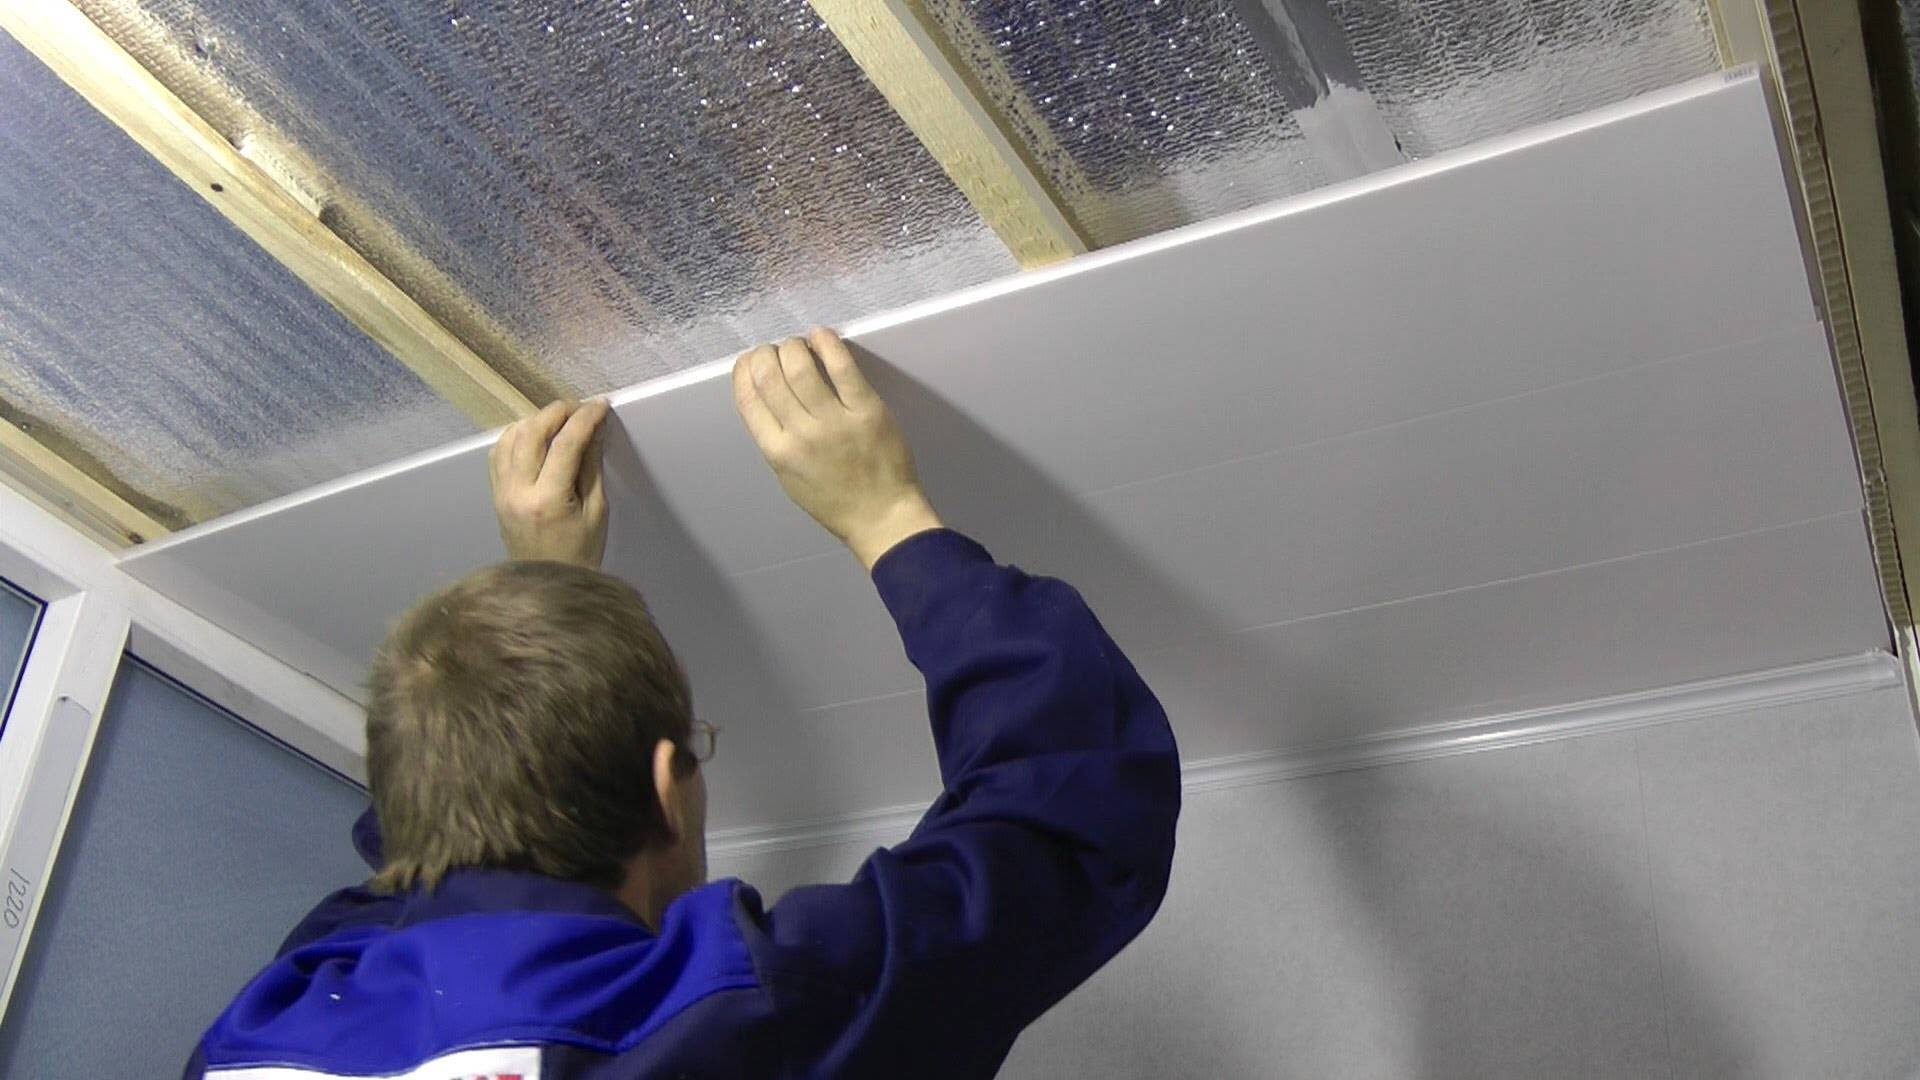 Как сделать потолок из пластиковых панелей своими руками + видео, монтаж - инструкция